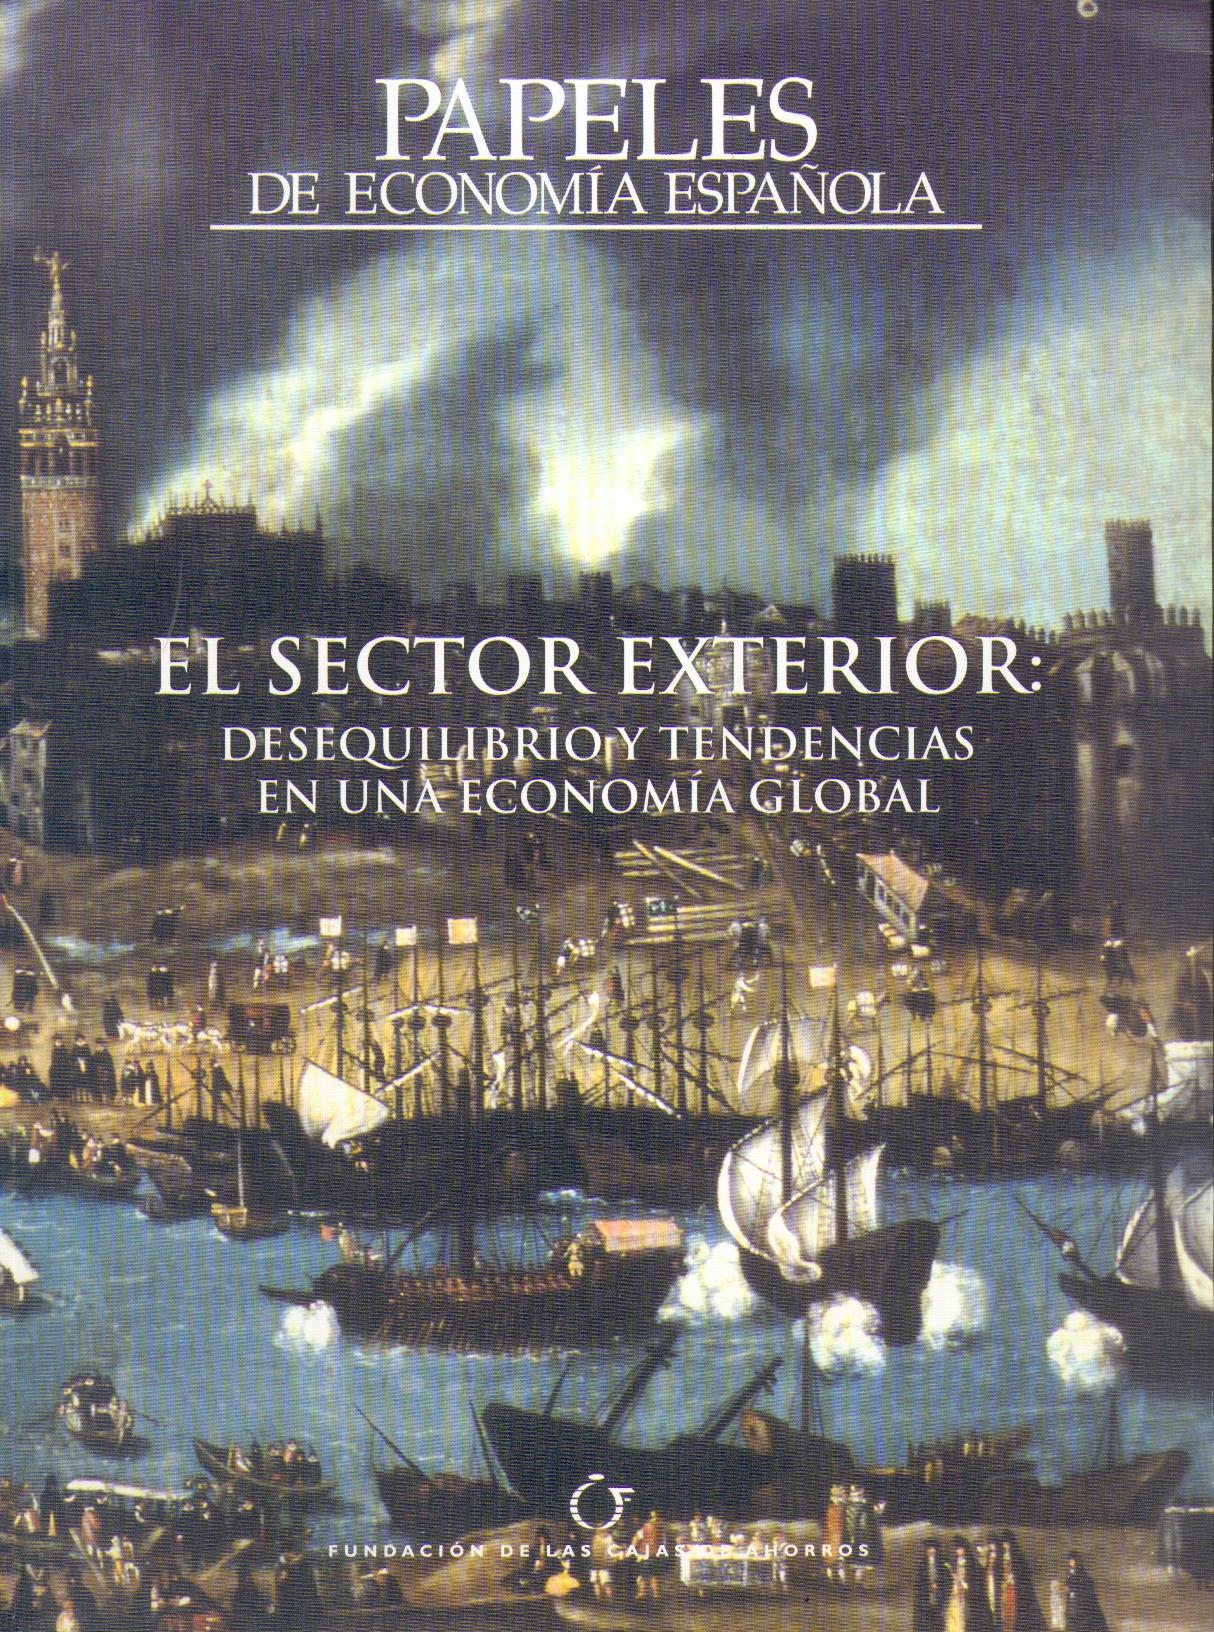 El Sector Exterior. Papeles de Economia Española Nº 116 "Desequlibrios y Tendencias en una Economia Global"